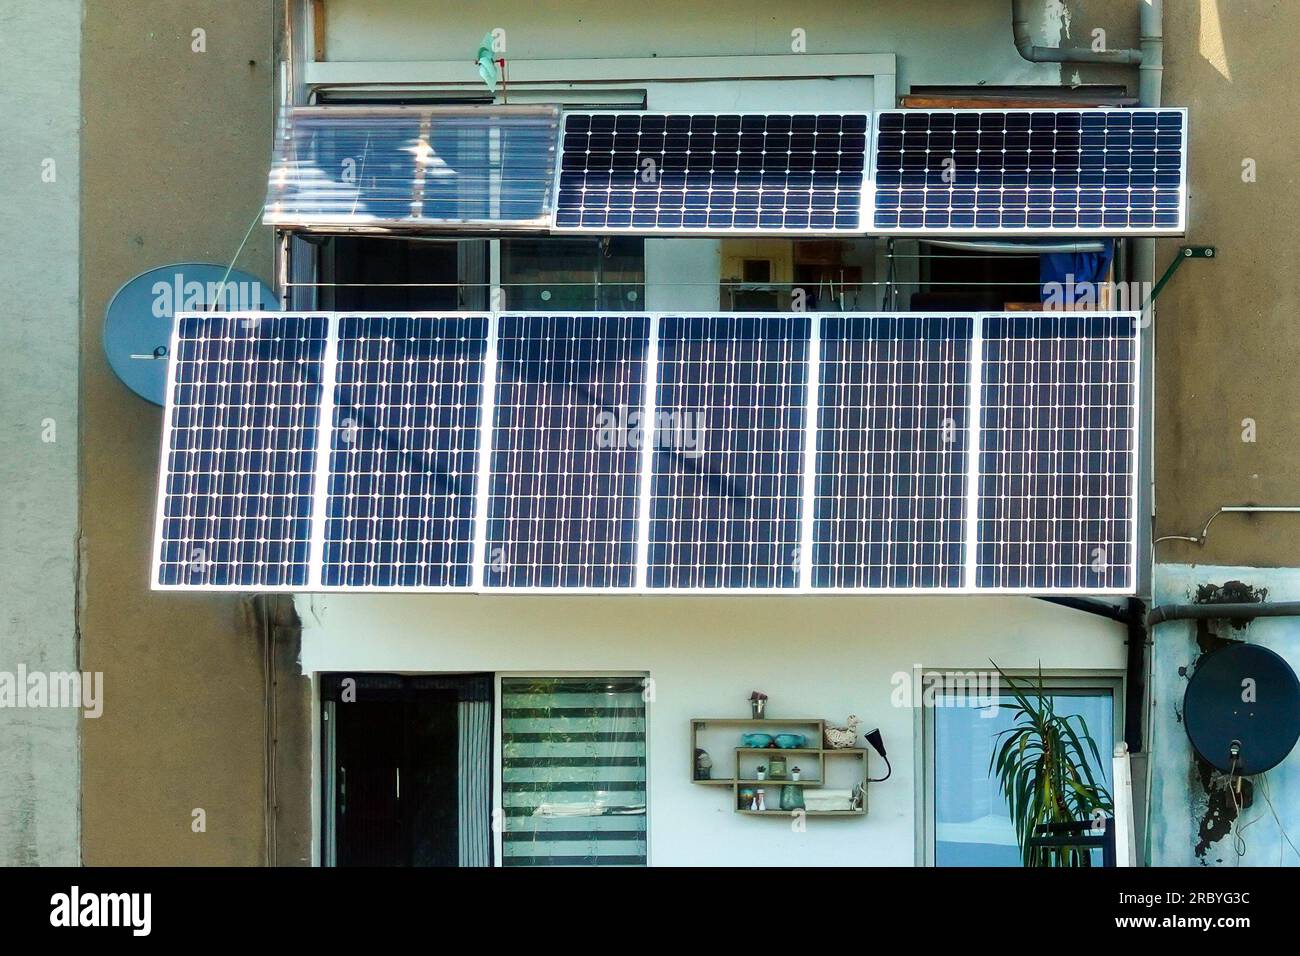 Balkonkraftwerk: Solarpaneele eines Photovoltaiksystems auf dem Balkon eines Wohnungsgebäudes in Dortmund wandeln Solarenergie in Strom für den häuslichen Gebrauch um. Stockfoto